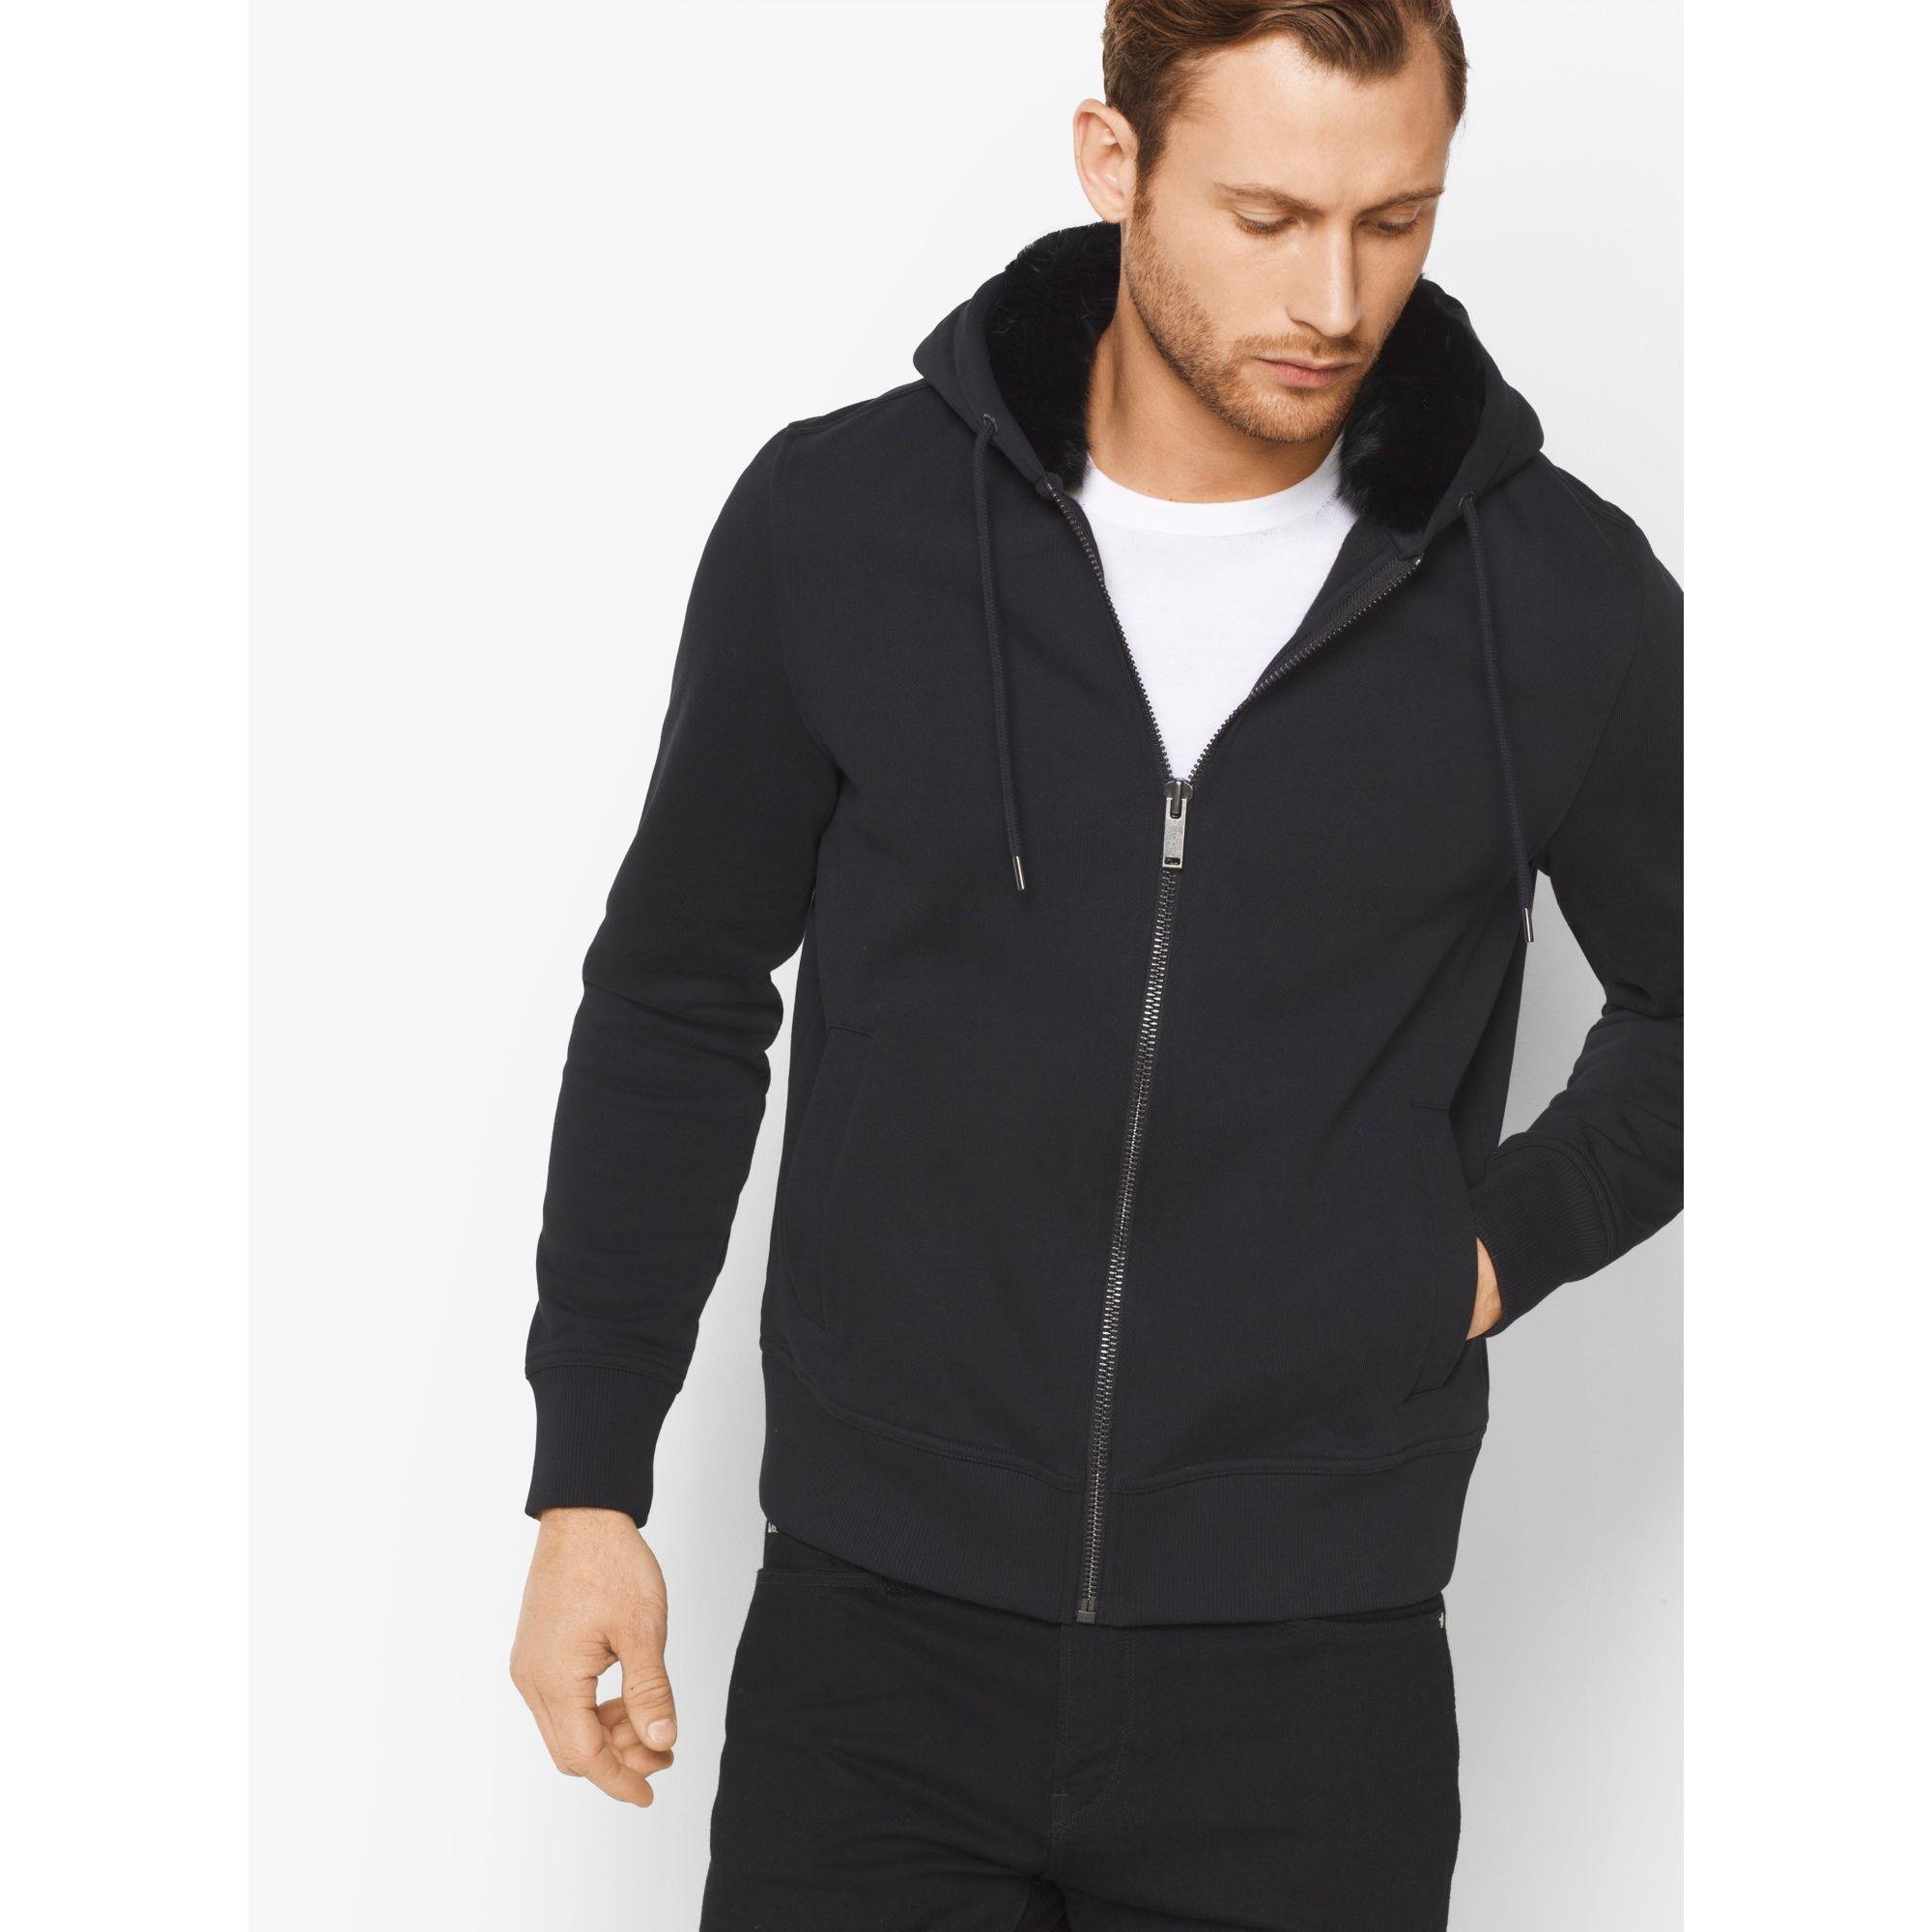 Lyst - Michael Kors Fur-lined Zip-up Hoodie in Black for Men